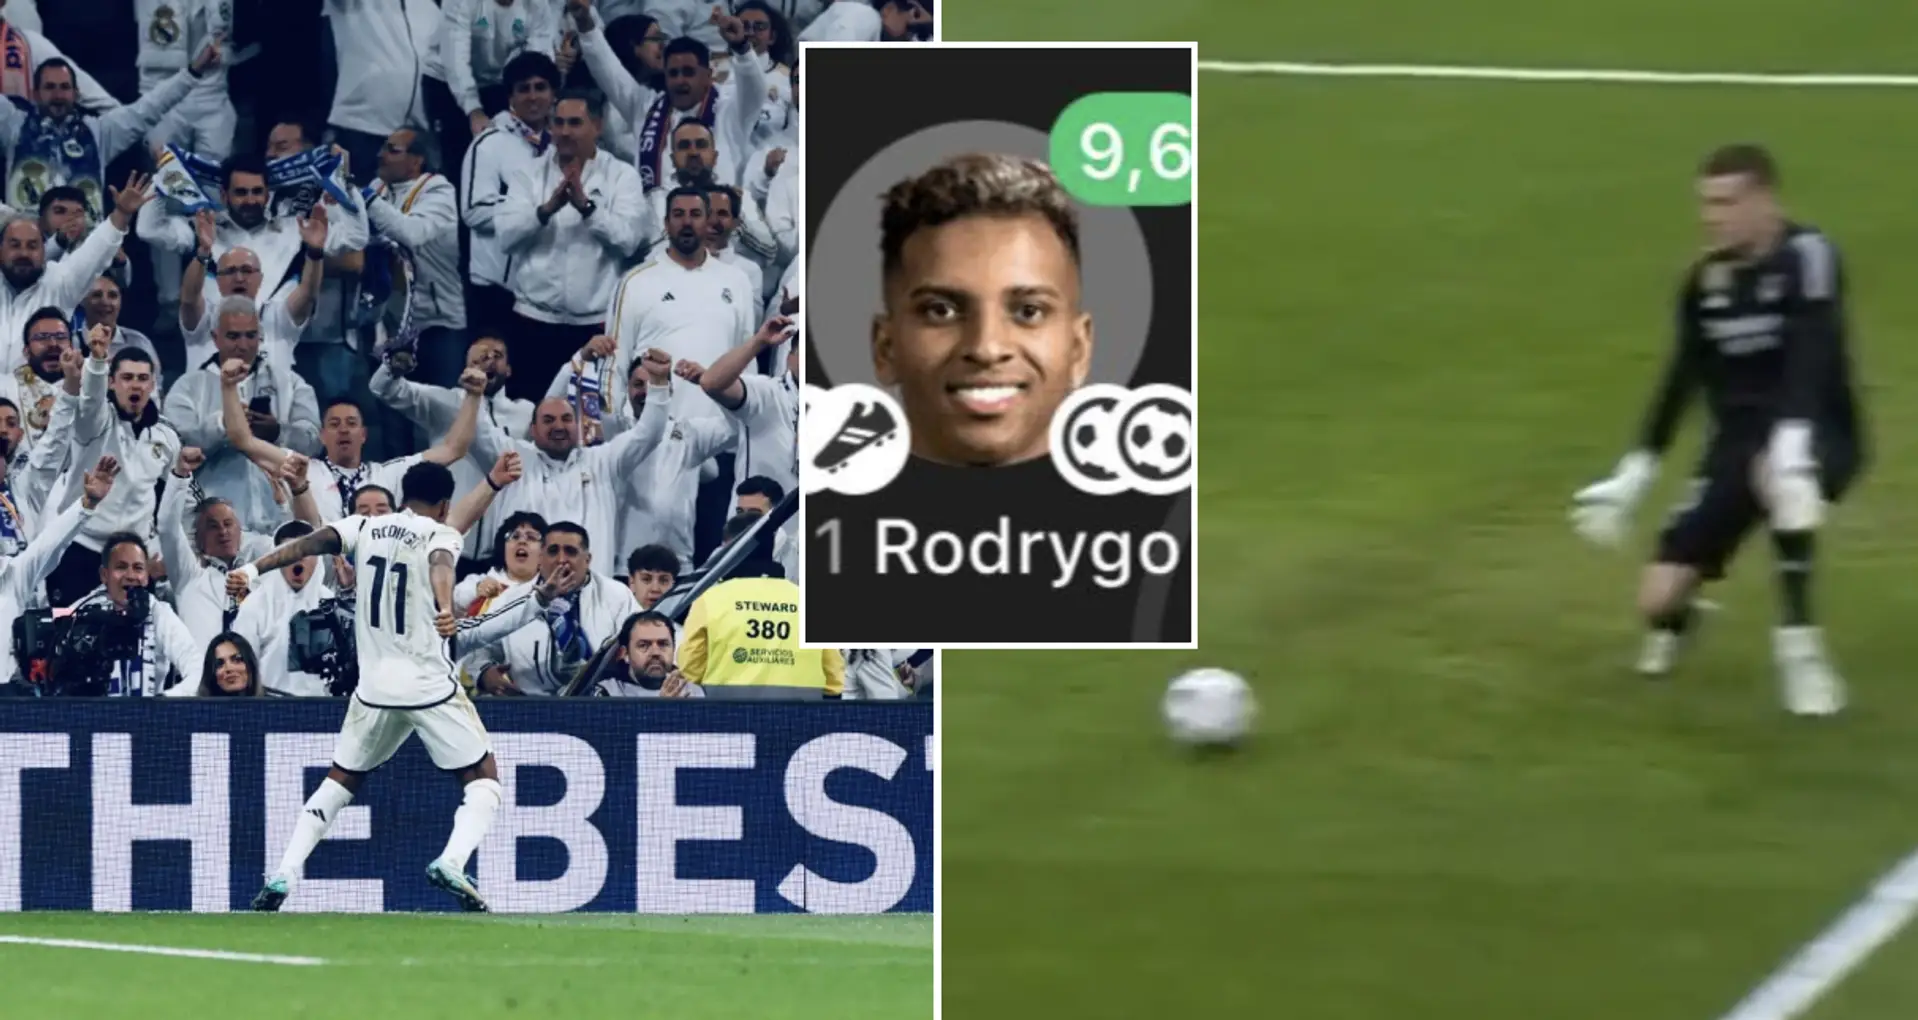 Rodrygo - 10, Lunin - 9: Valoración de los jugadores del Real Madrid en la goleada vs Valencia